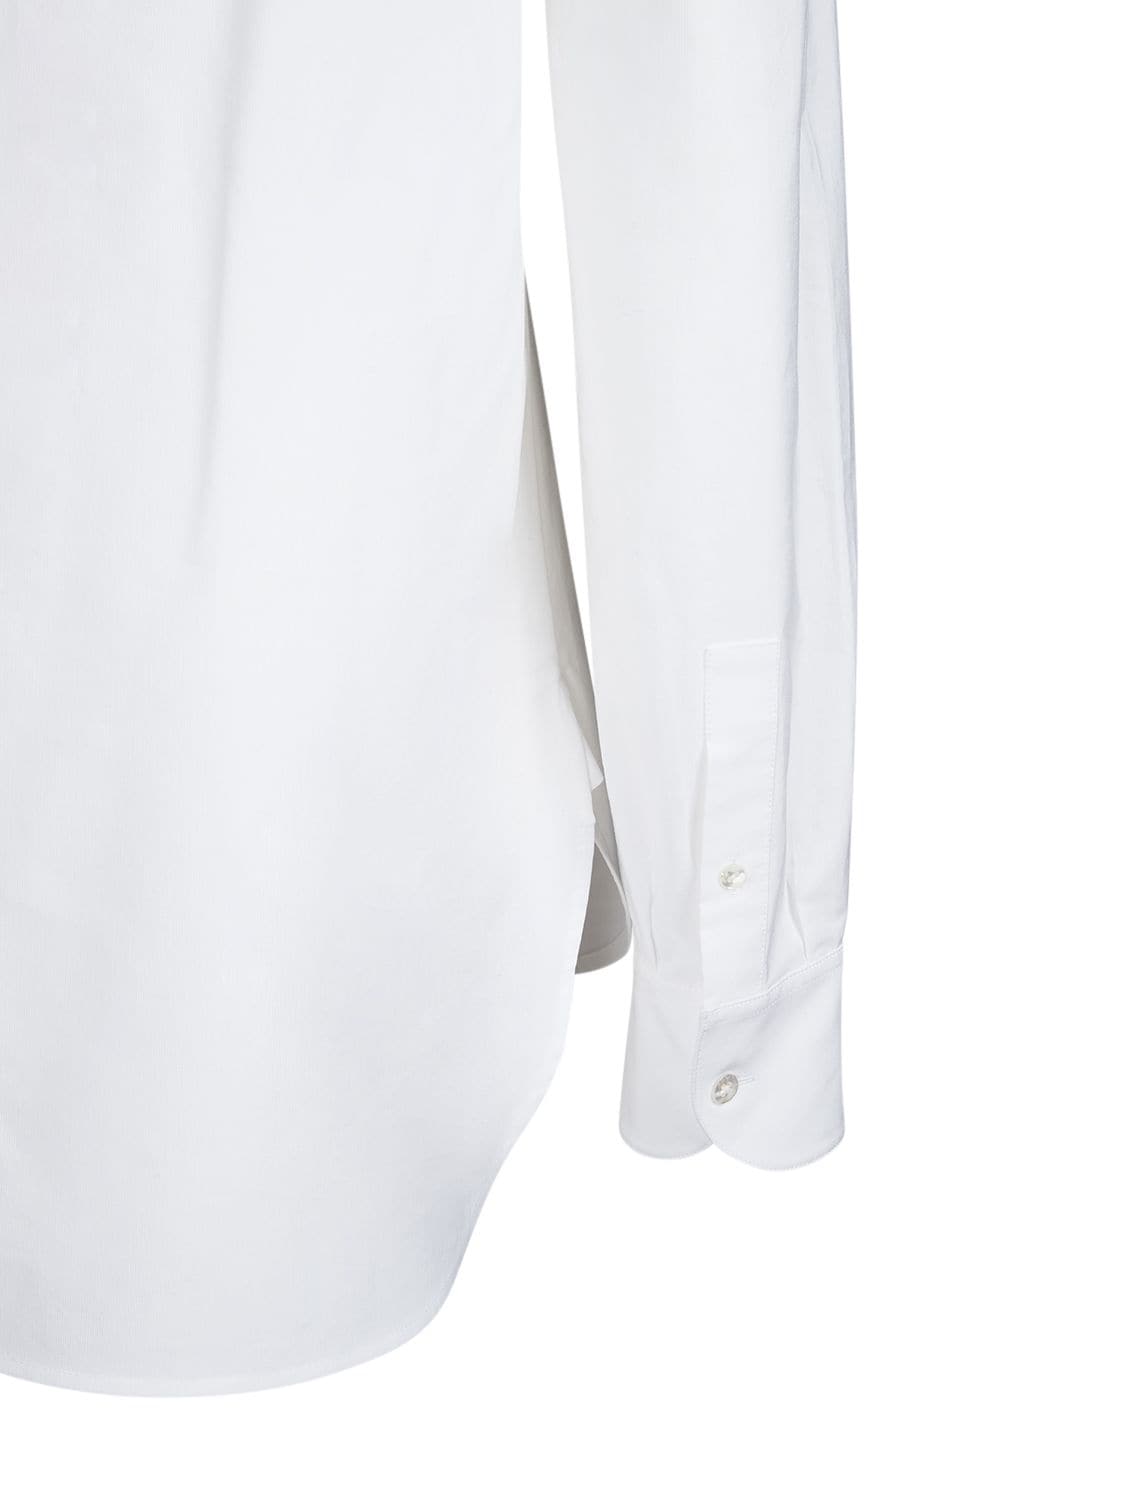 DERICA标准版型棉质衬衫